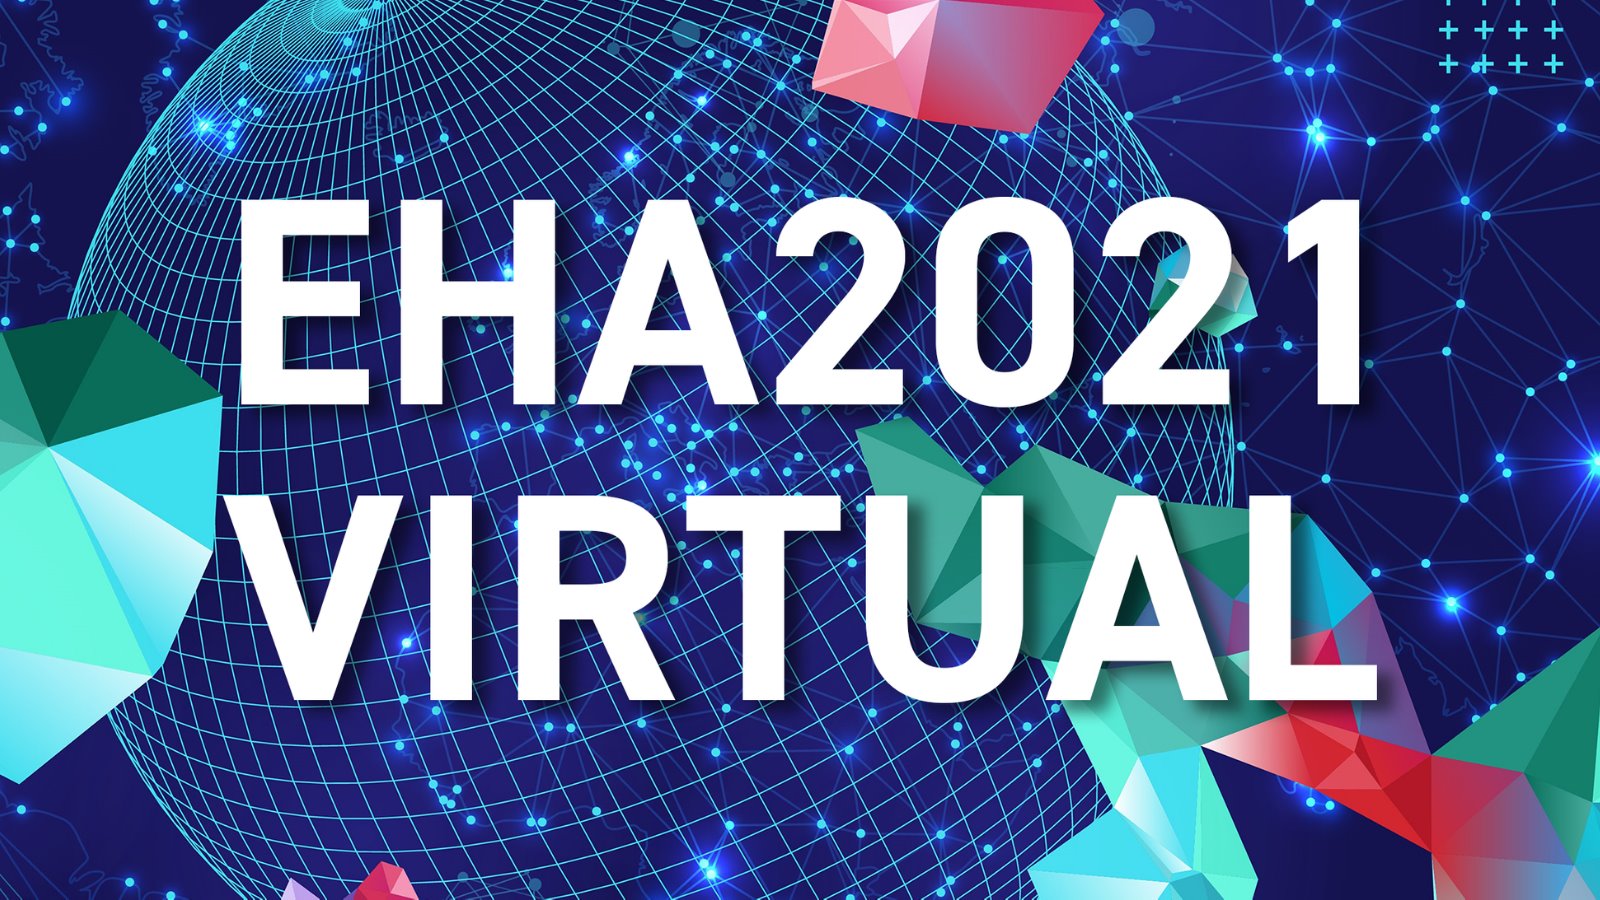 EHA2021年第26届欧洲血液学协会大会/年会(EHA2021)欧洲血液学年会欧洲血液年会EHA2021 Virtual